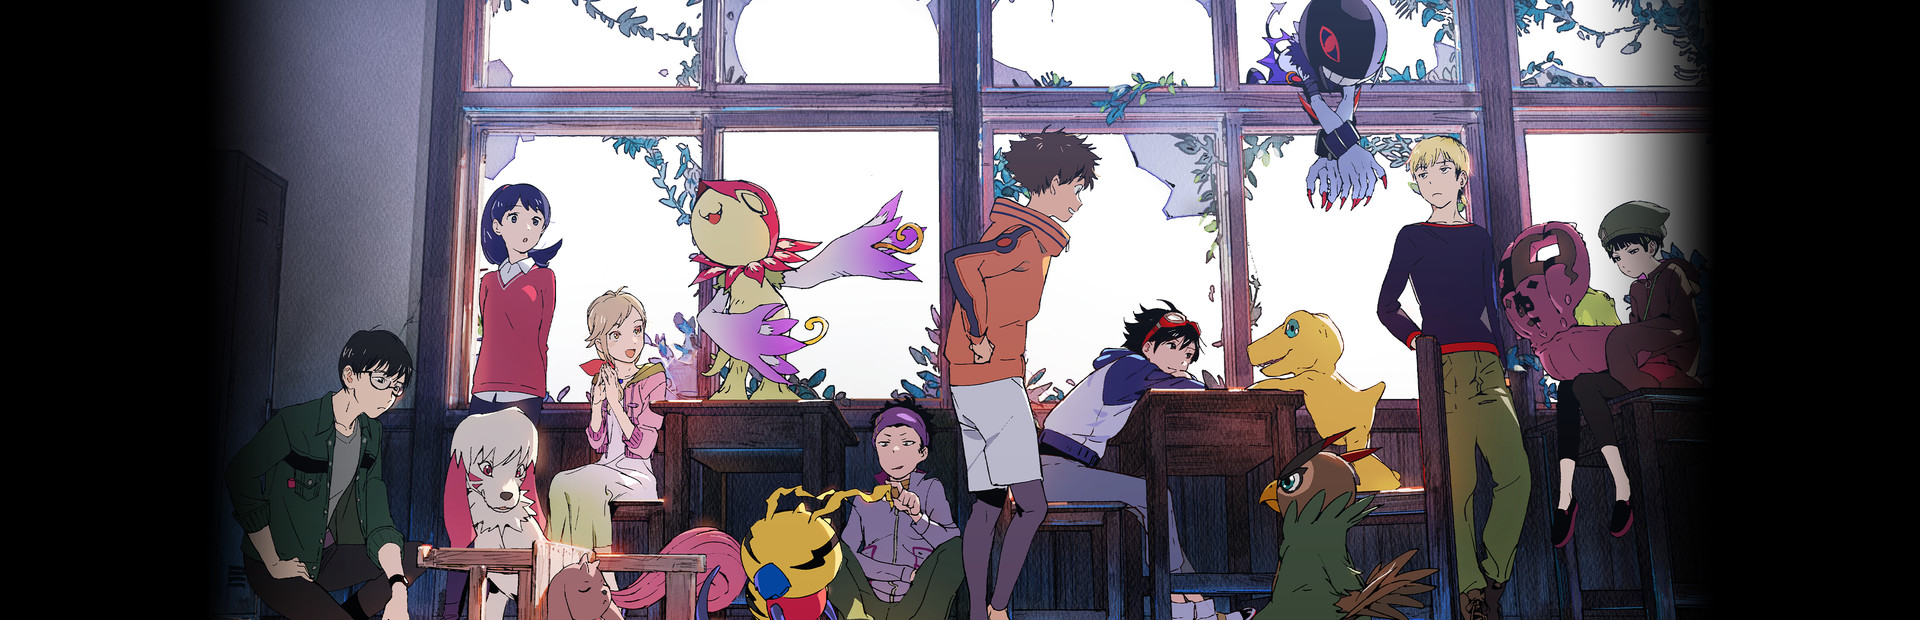 Digimon Survive cover image